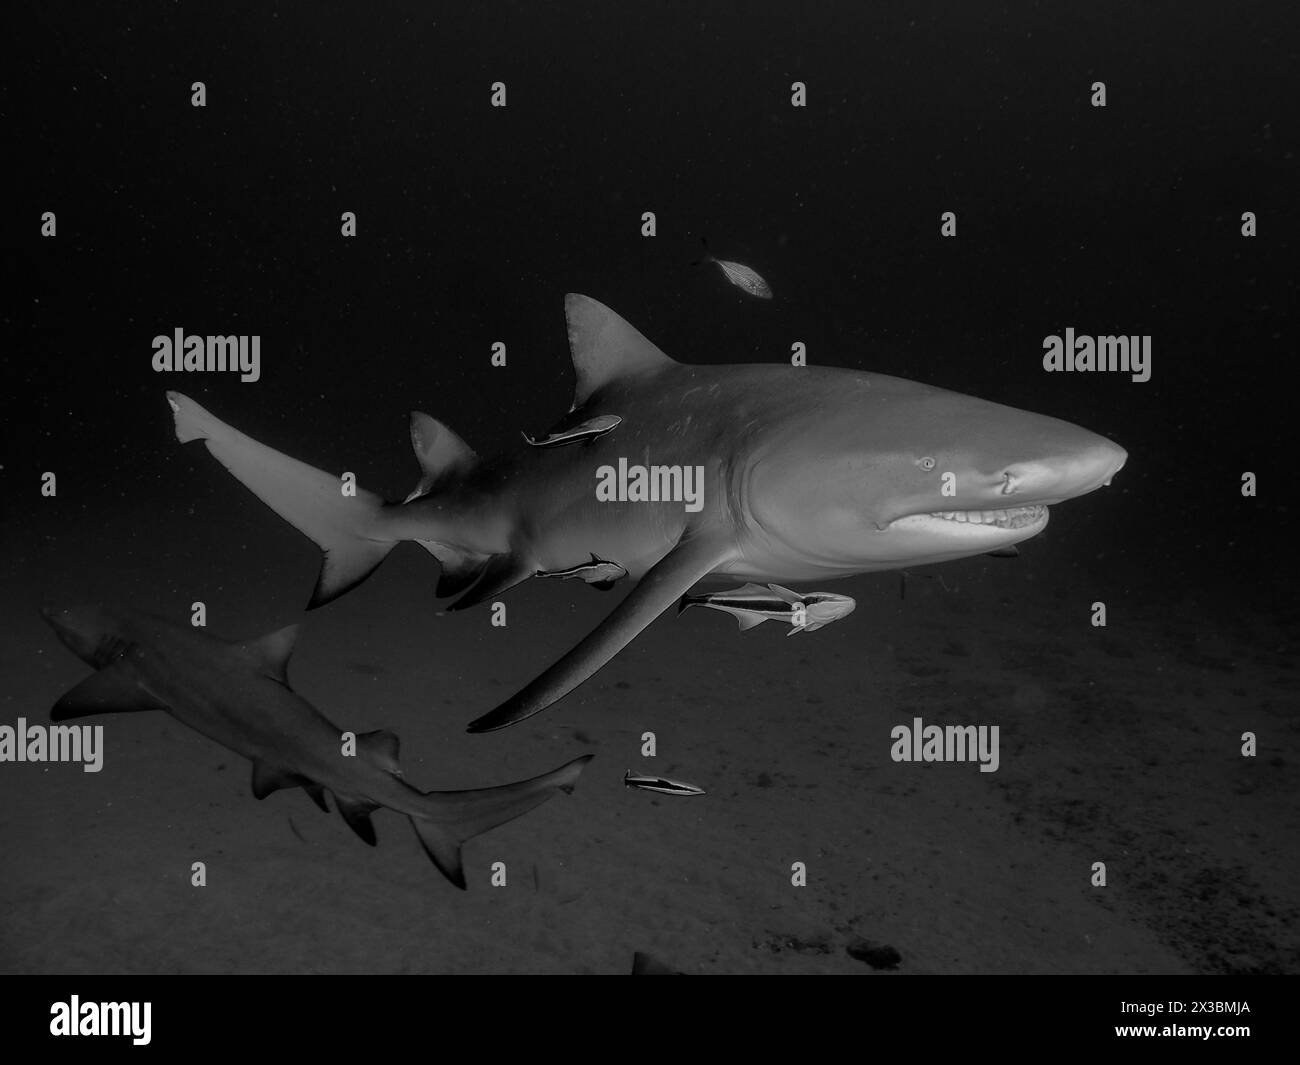 Un requin citron (Negaprion brevirostris) nage dans l'océan sombre, représenté en noir et blanc. Site de plongée Bonair, Jupiter, Floride, États-Unis Banque D'Images